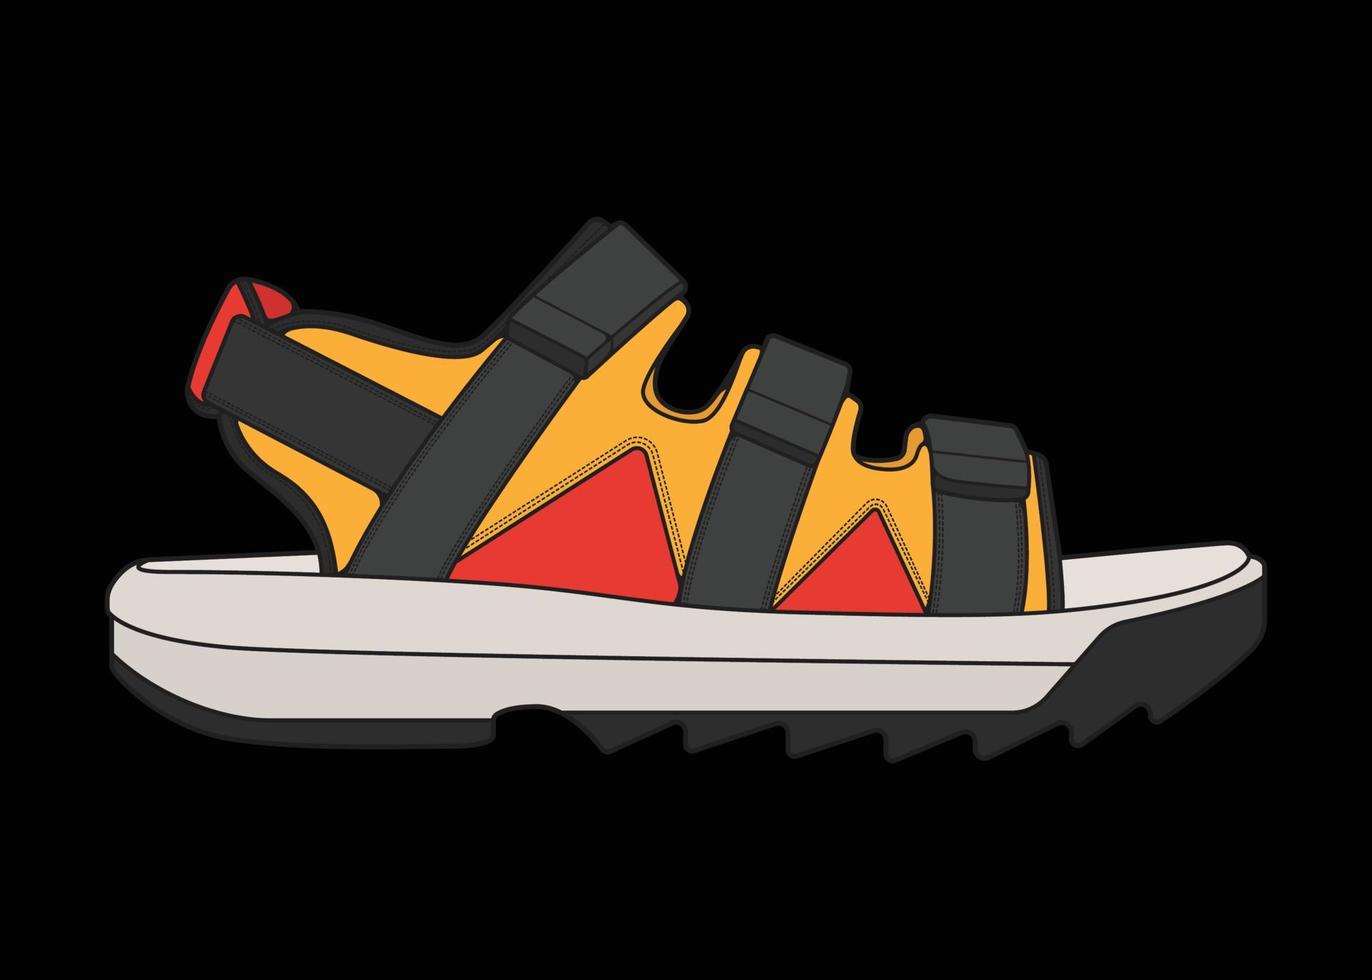 sandali con cinturino multicolore disegno vettoriale, sandali con cinturino in stile multicolore, illustrazione vettoriale. con sfondo nero vettore